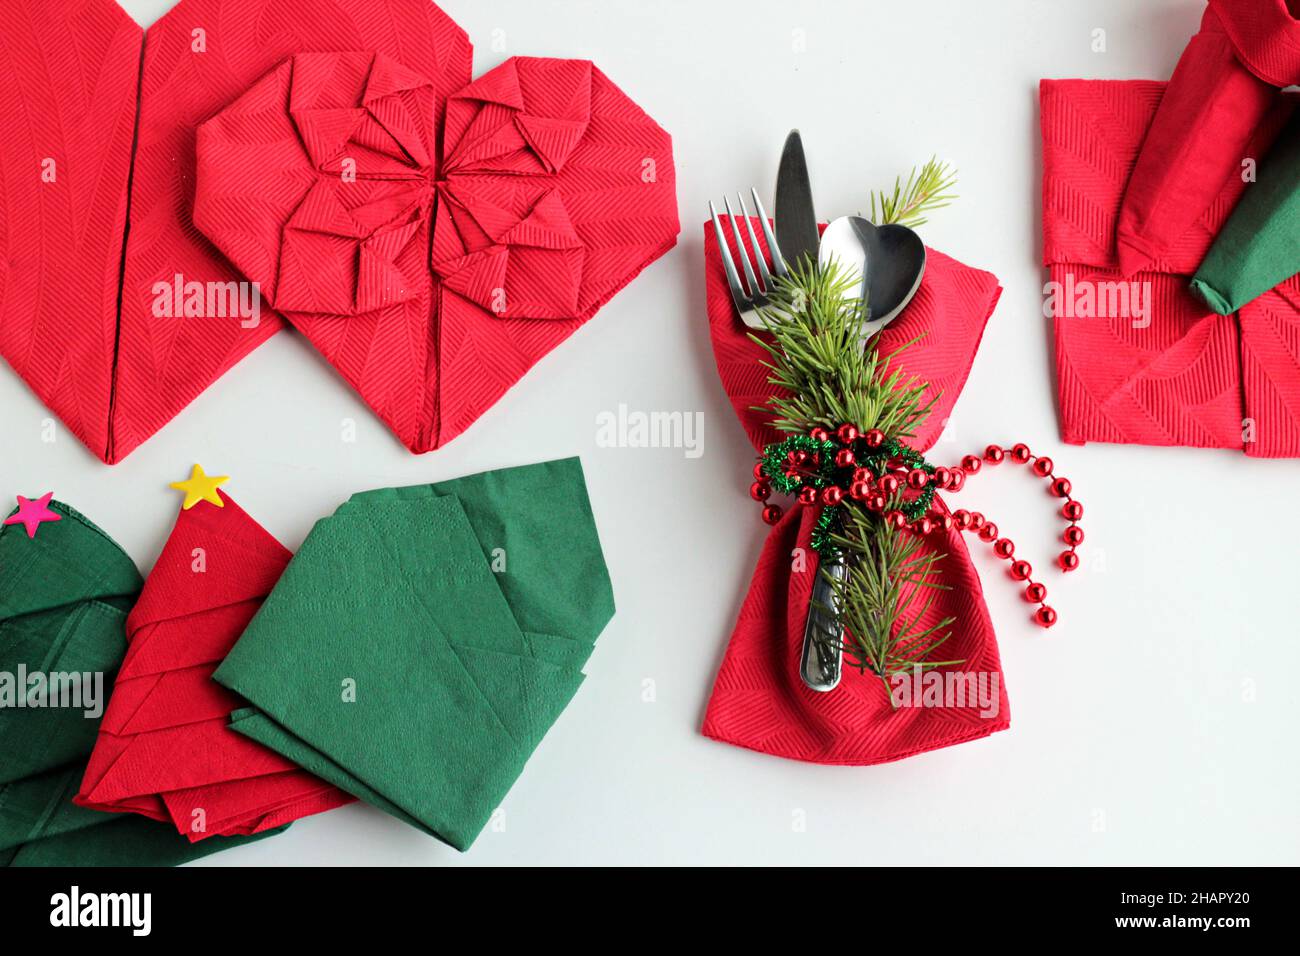 Serviettes de Noël rouges et vertes pliées en différentes formes sur une surface blanche avec ensemble de couverts, ronds de serviettes et décorations de noël Banque D'Images